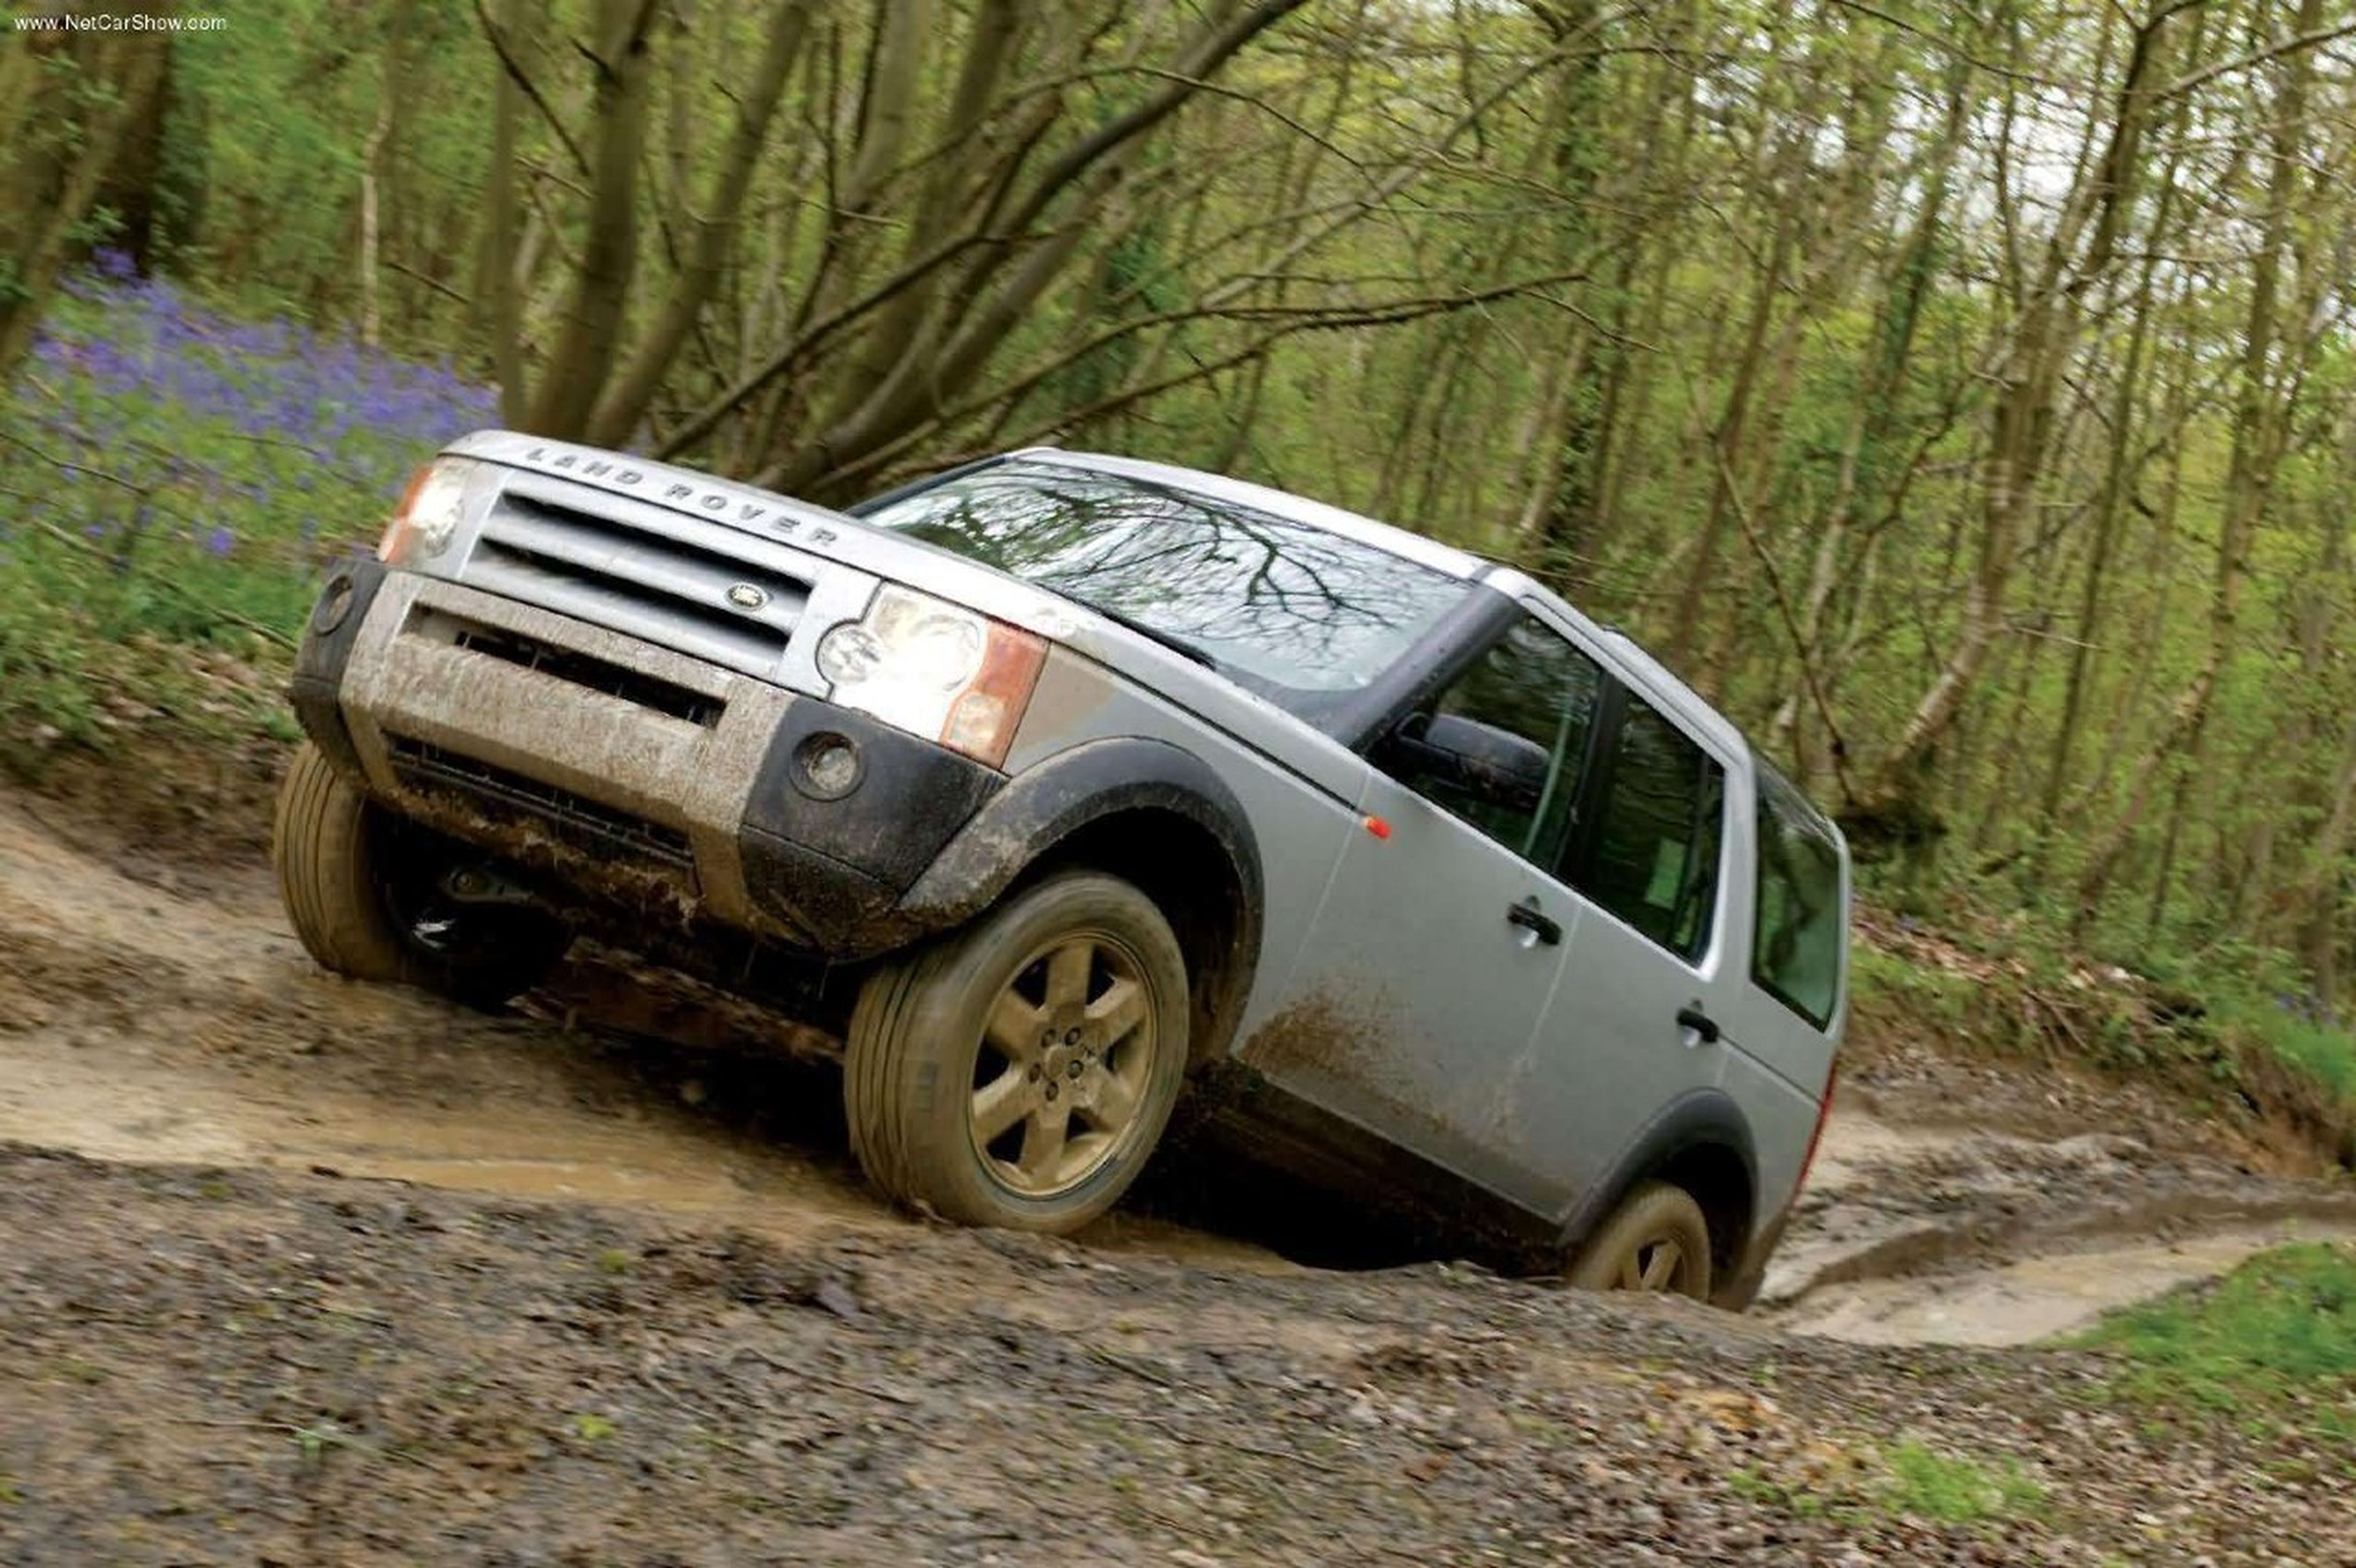 Historia del Land Rover Discovery